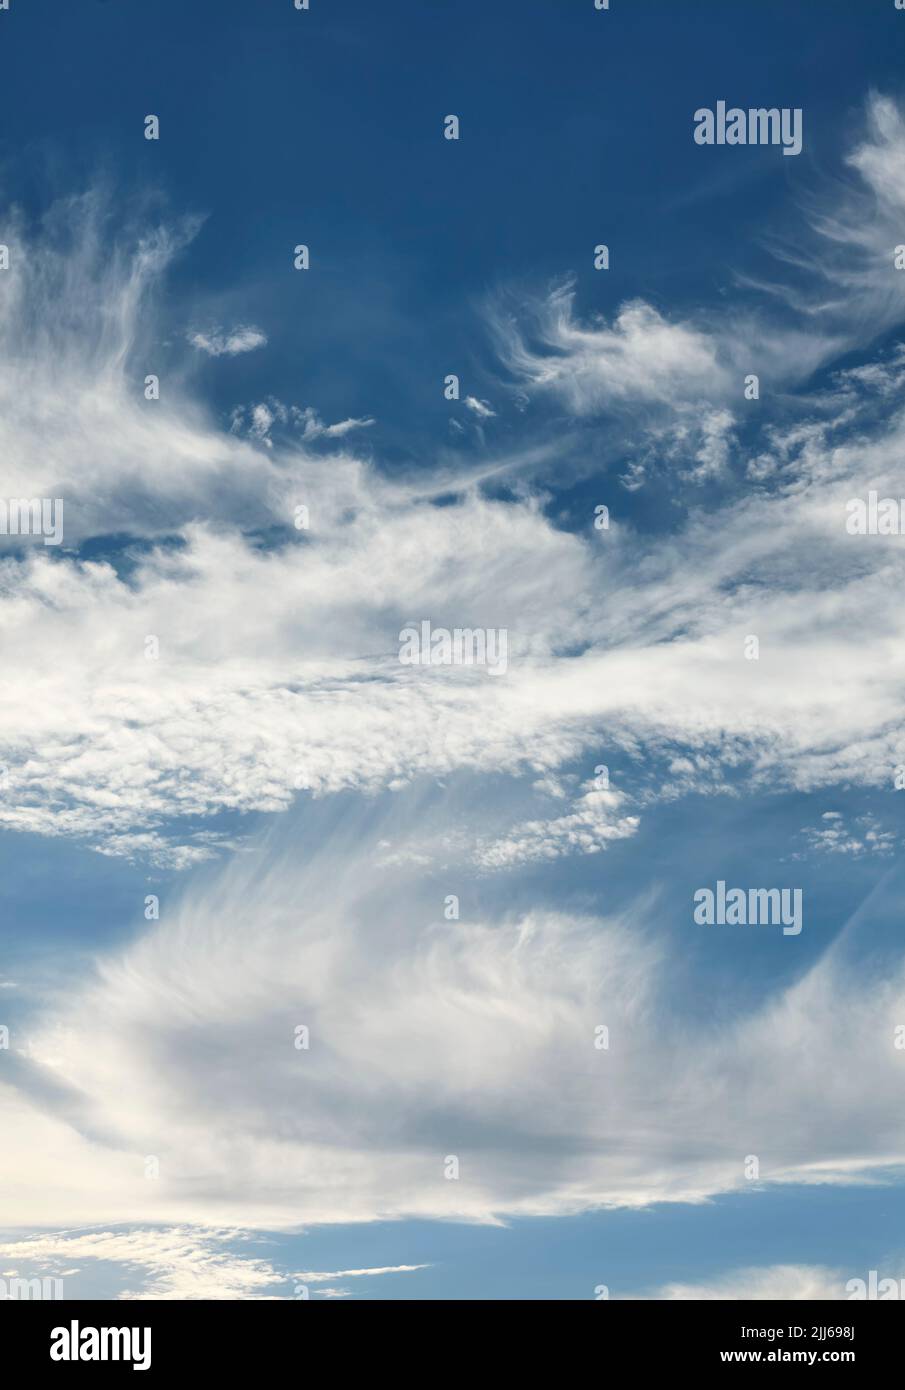 El cielo azul con nubes, natural de fondo. Foto de stock